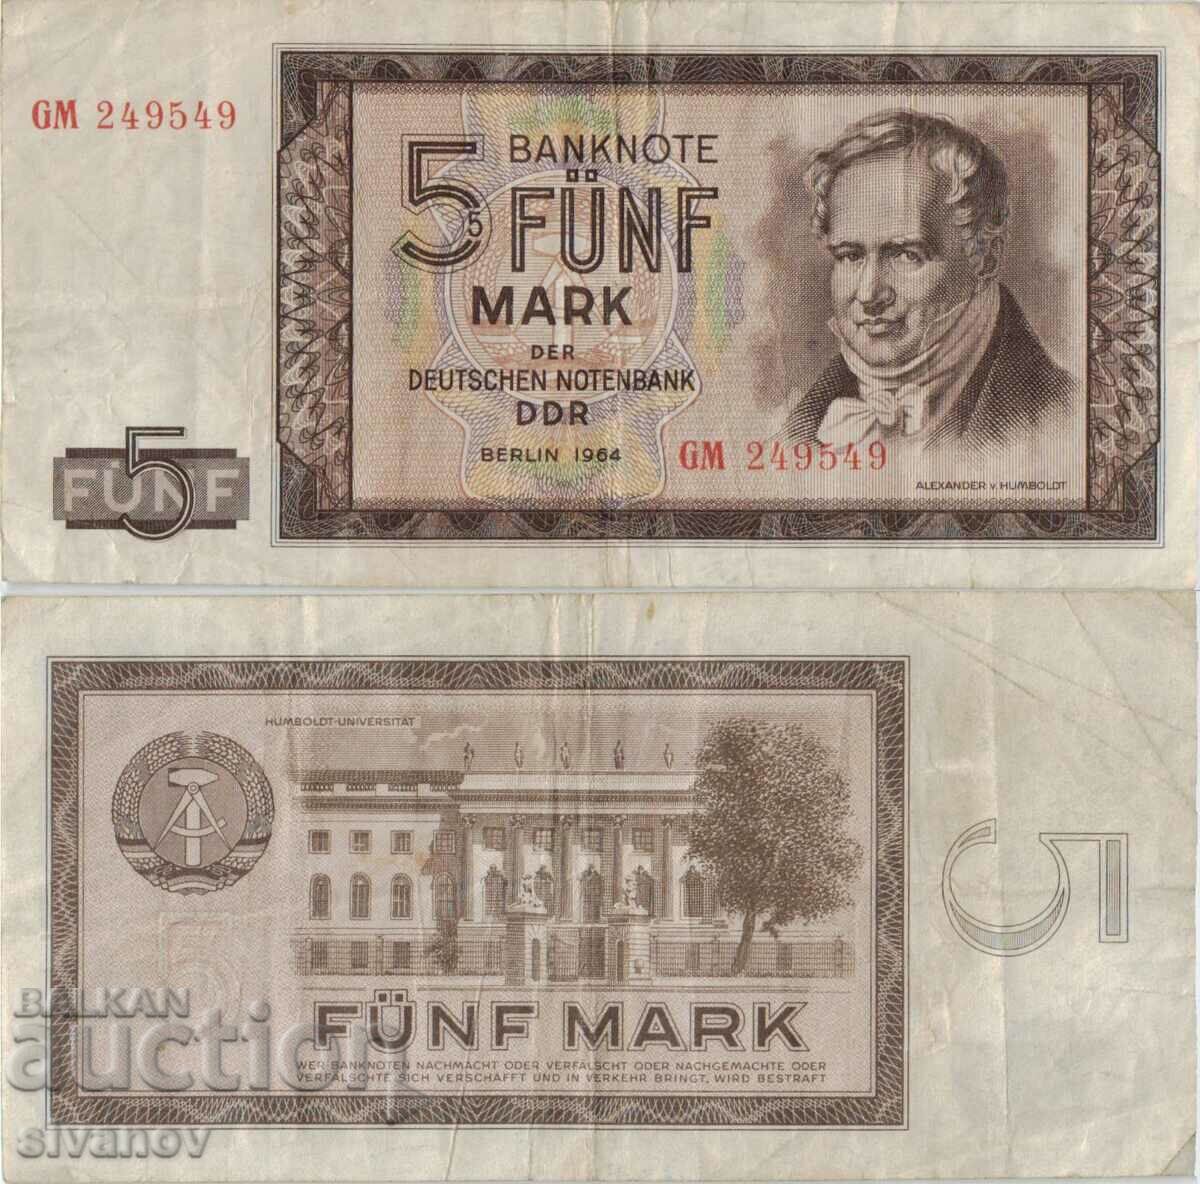 Γερμανία GDR 5 γραμματόσημα 1964 έτος #5077